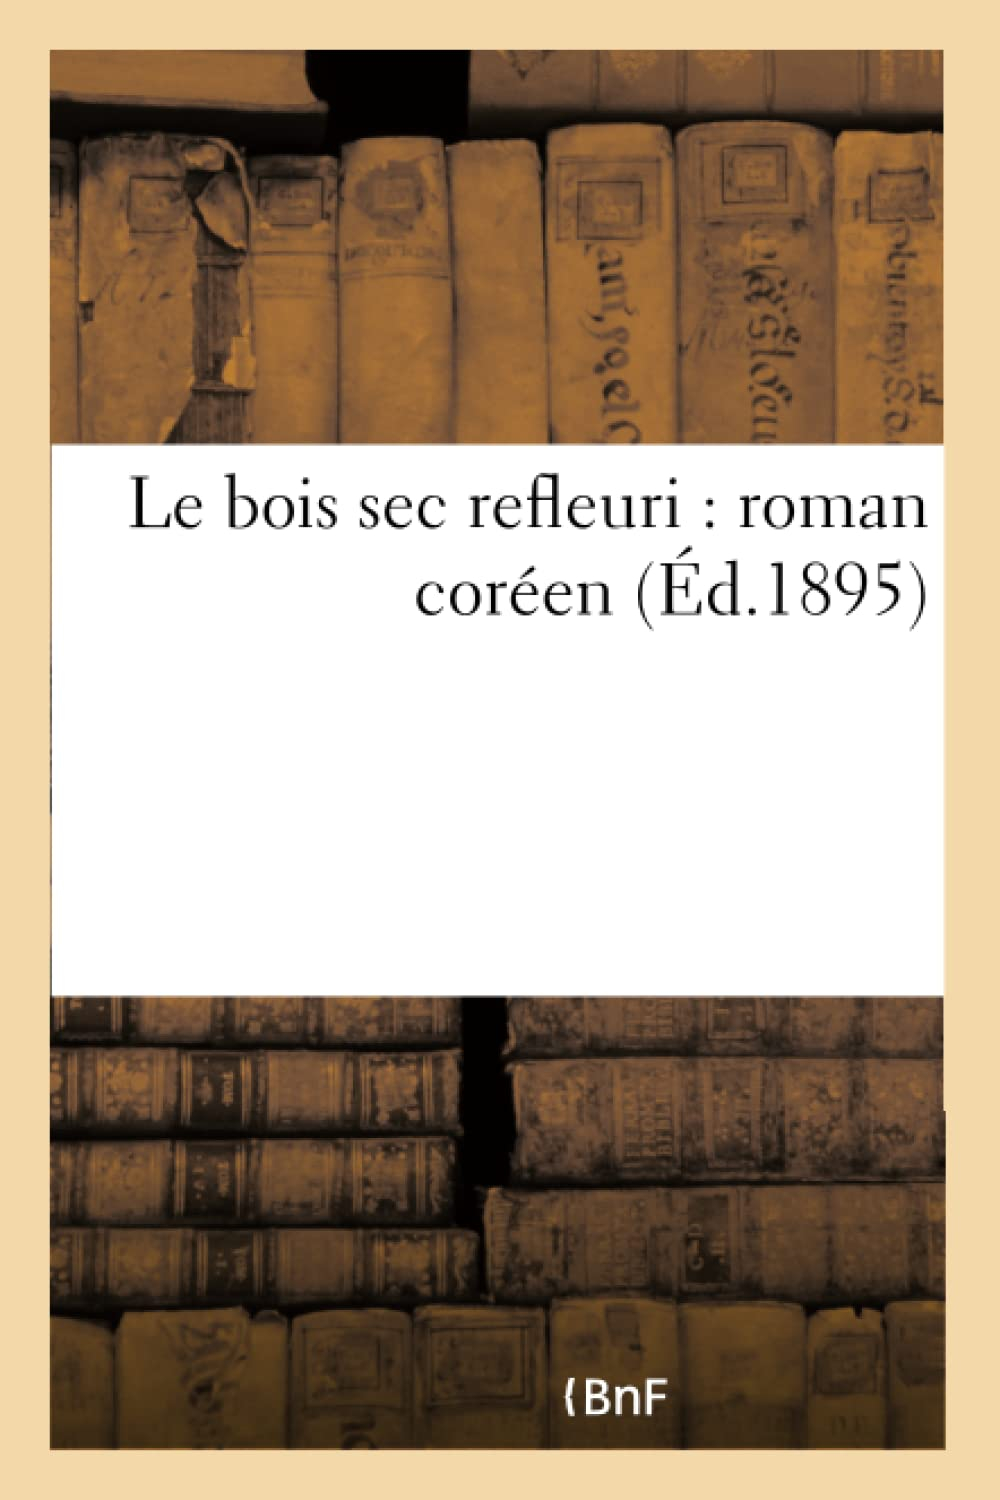 Le bois sec refleuri : roman coréen (Ed.1895)